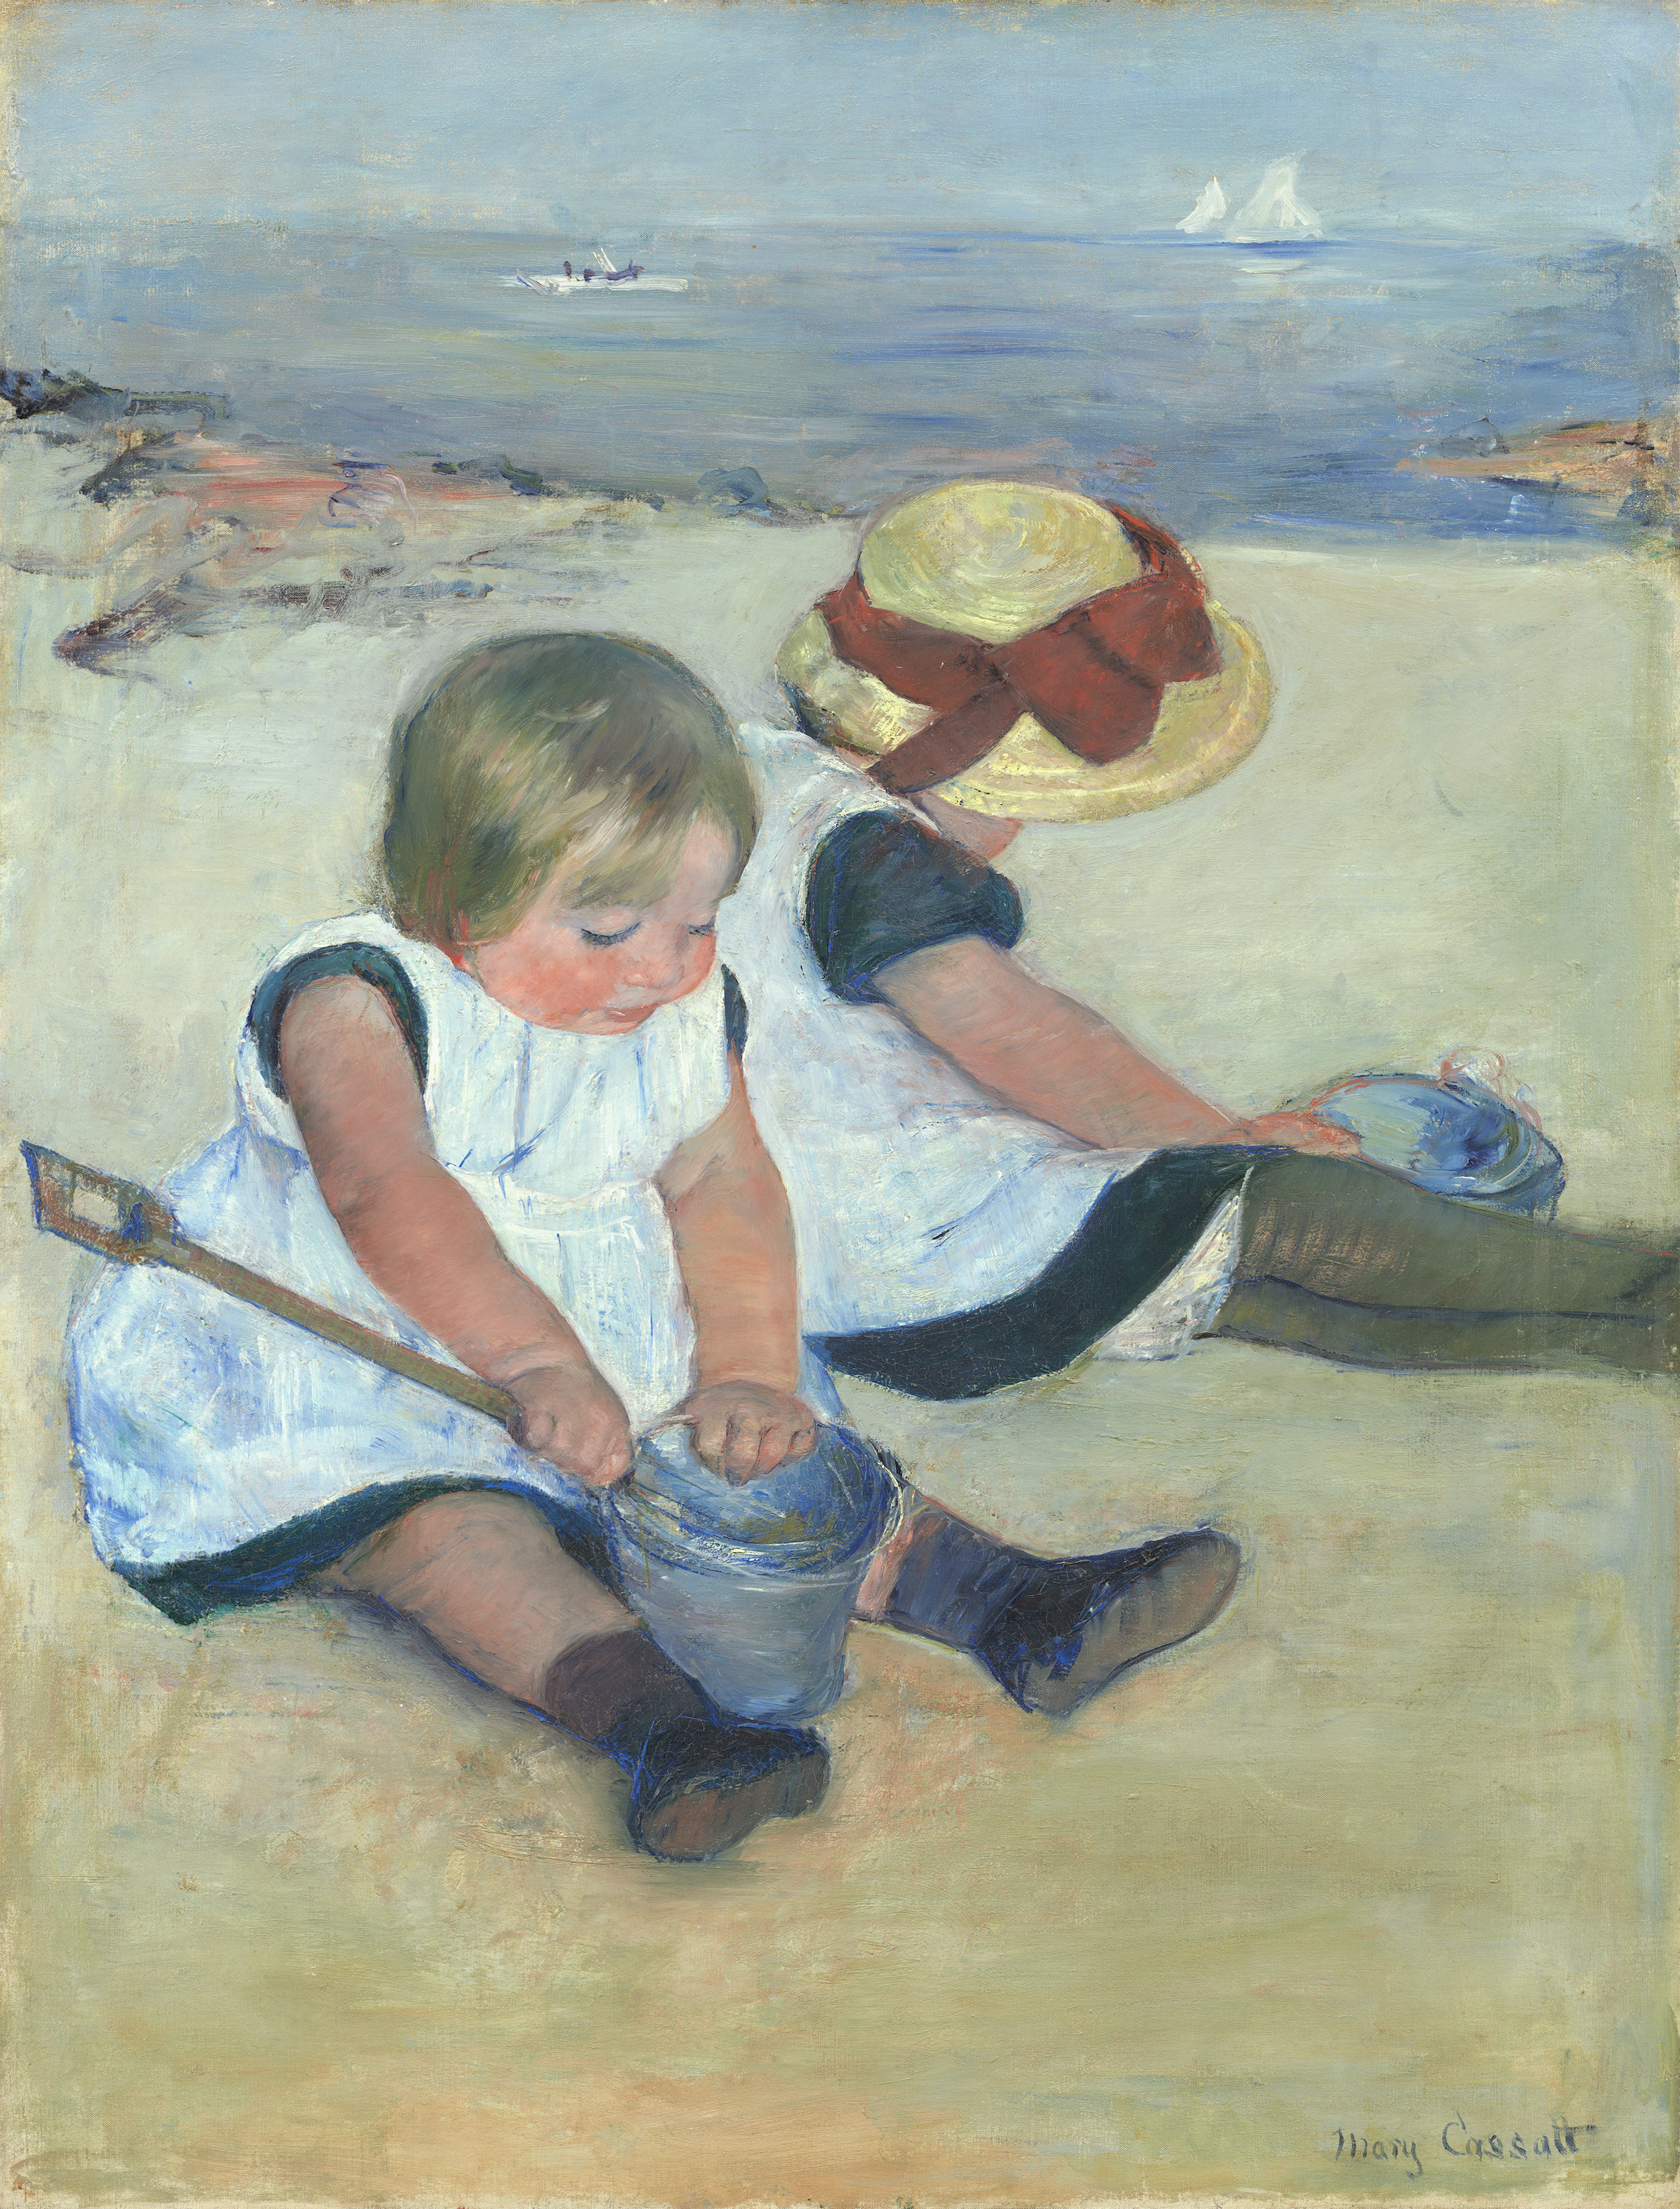 在海灘上玩耍的孩子們 by Mary Cassatt - 1884 年 - 97.4 x 74.2 公分 